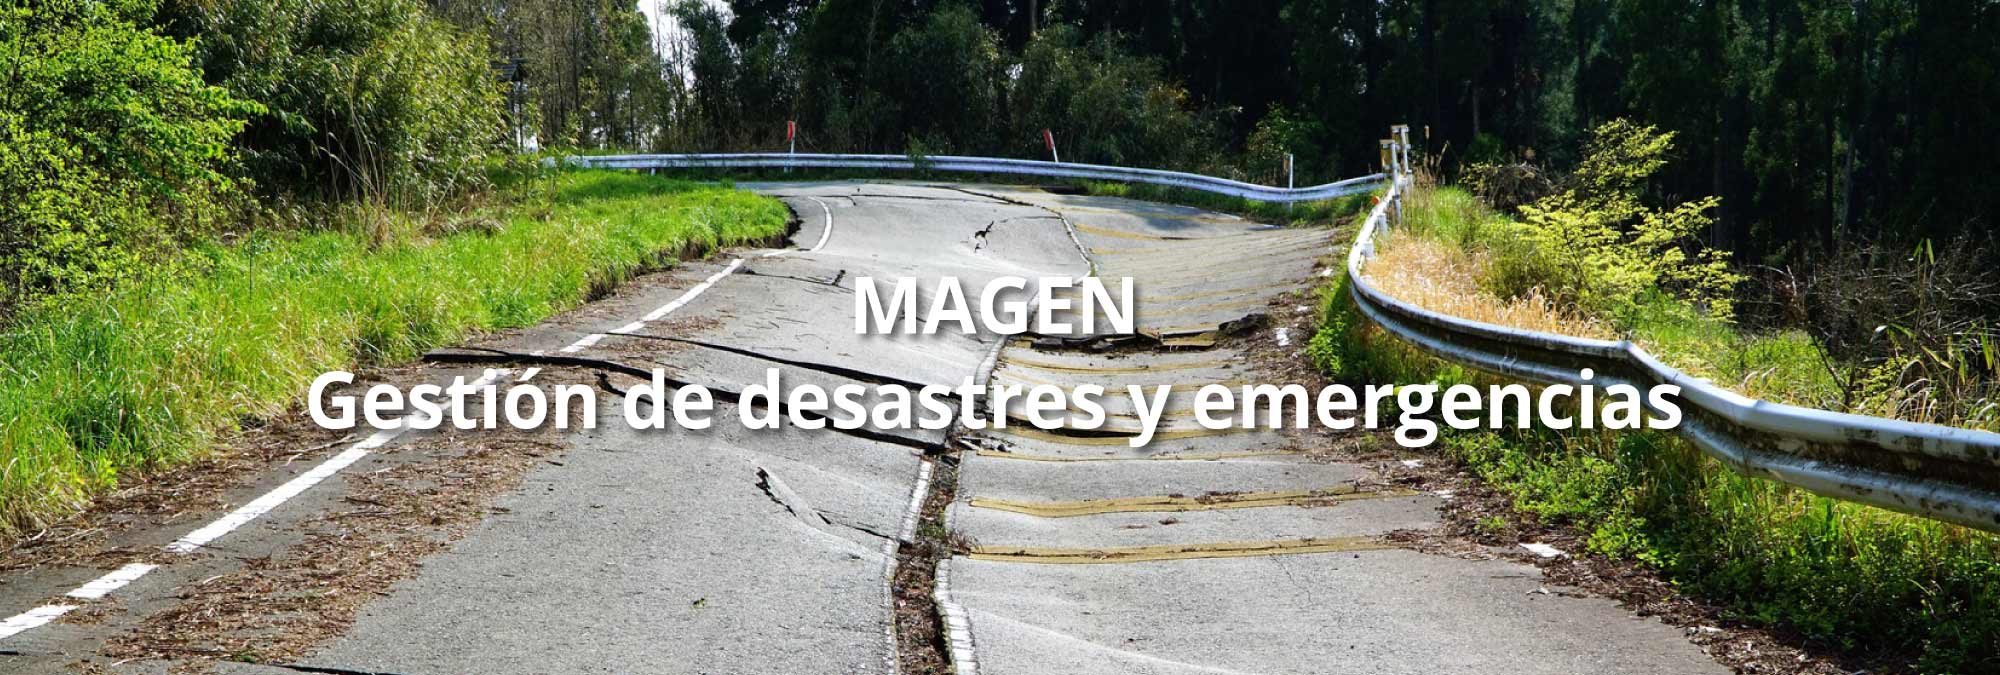 MAGEN – Gestión de desastres y emergencias